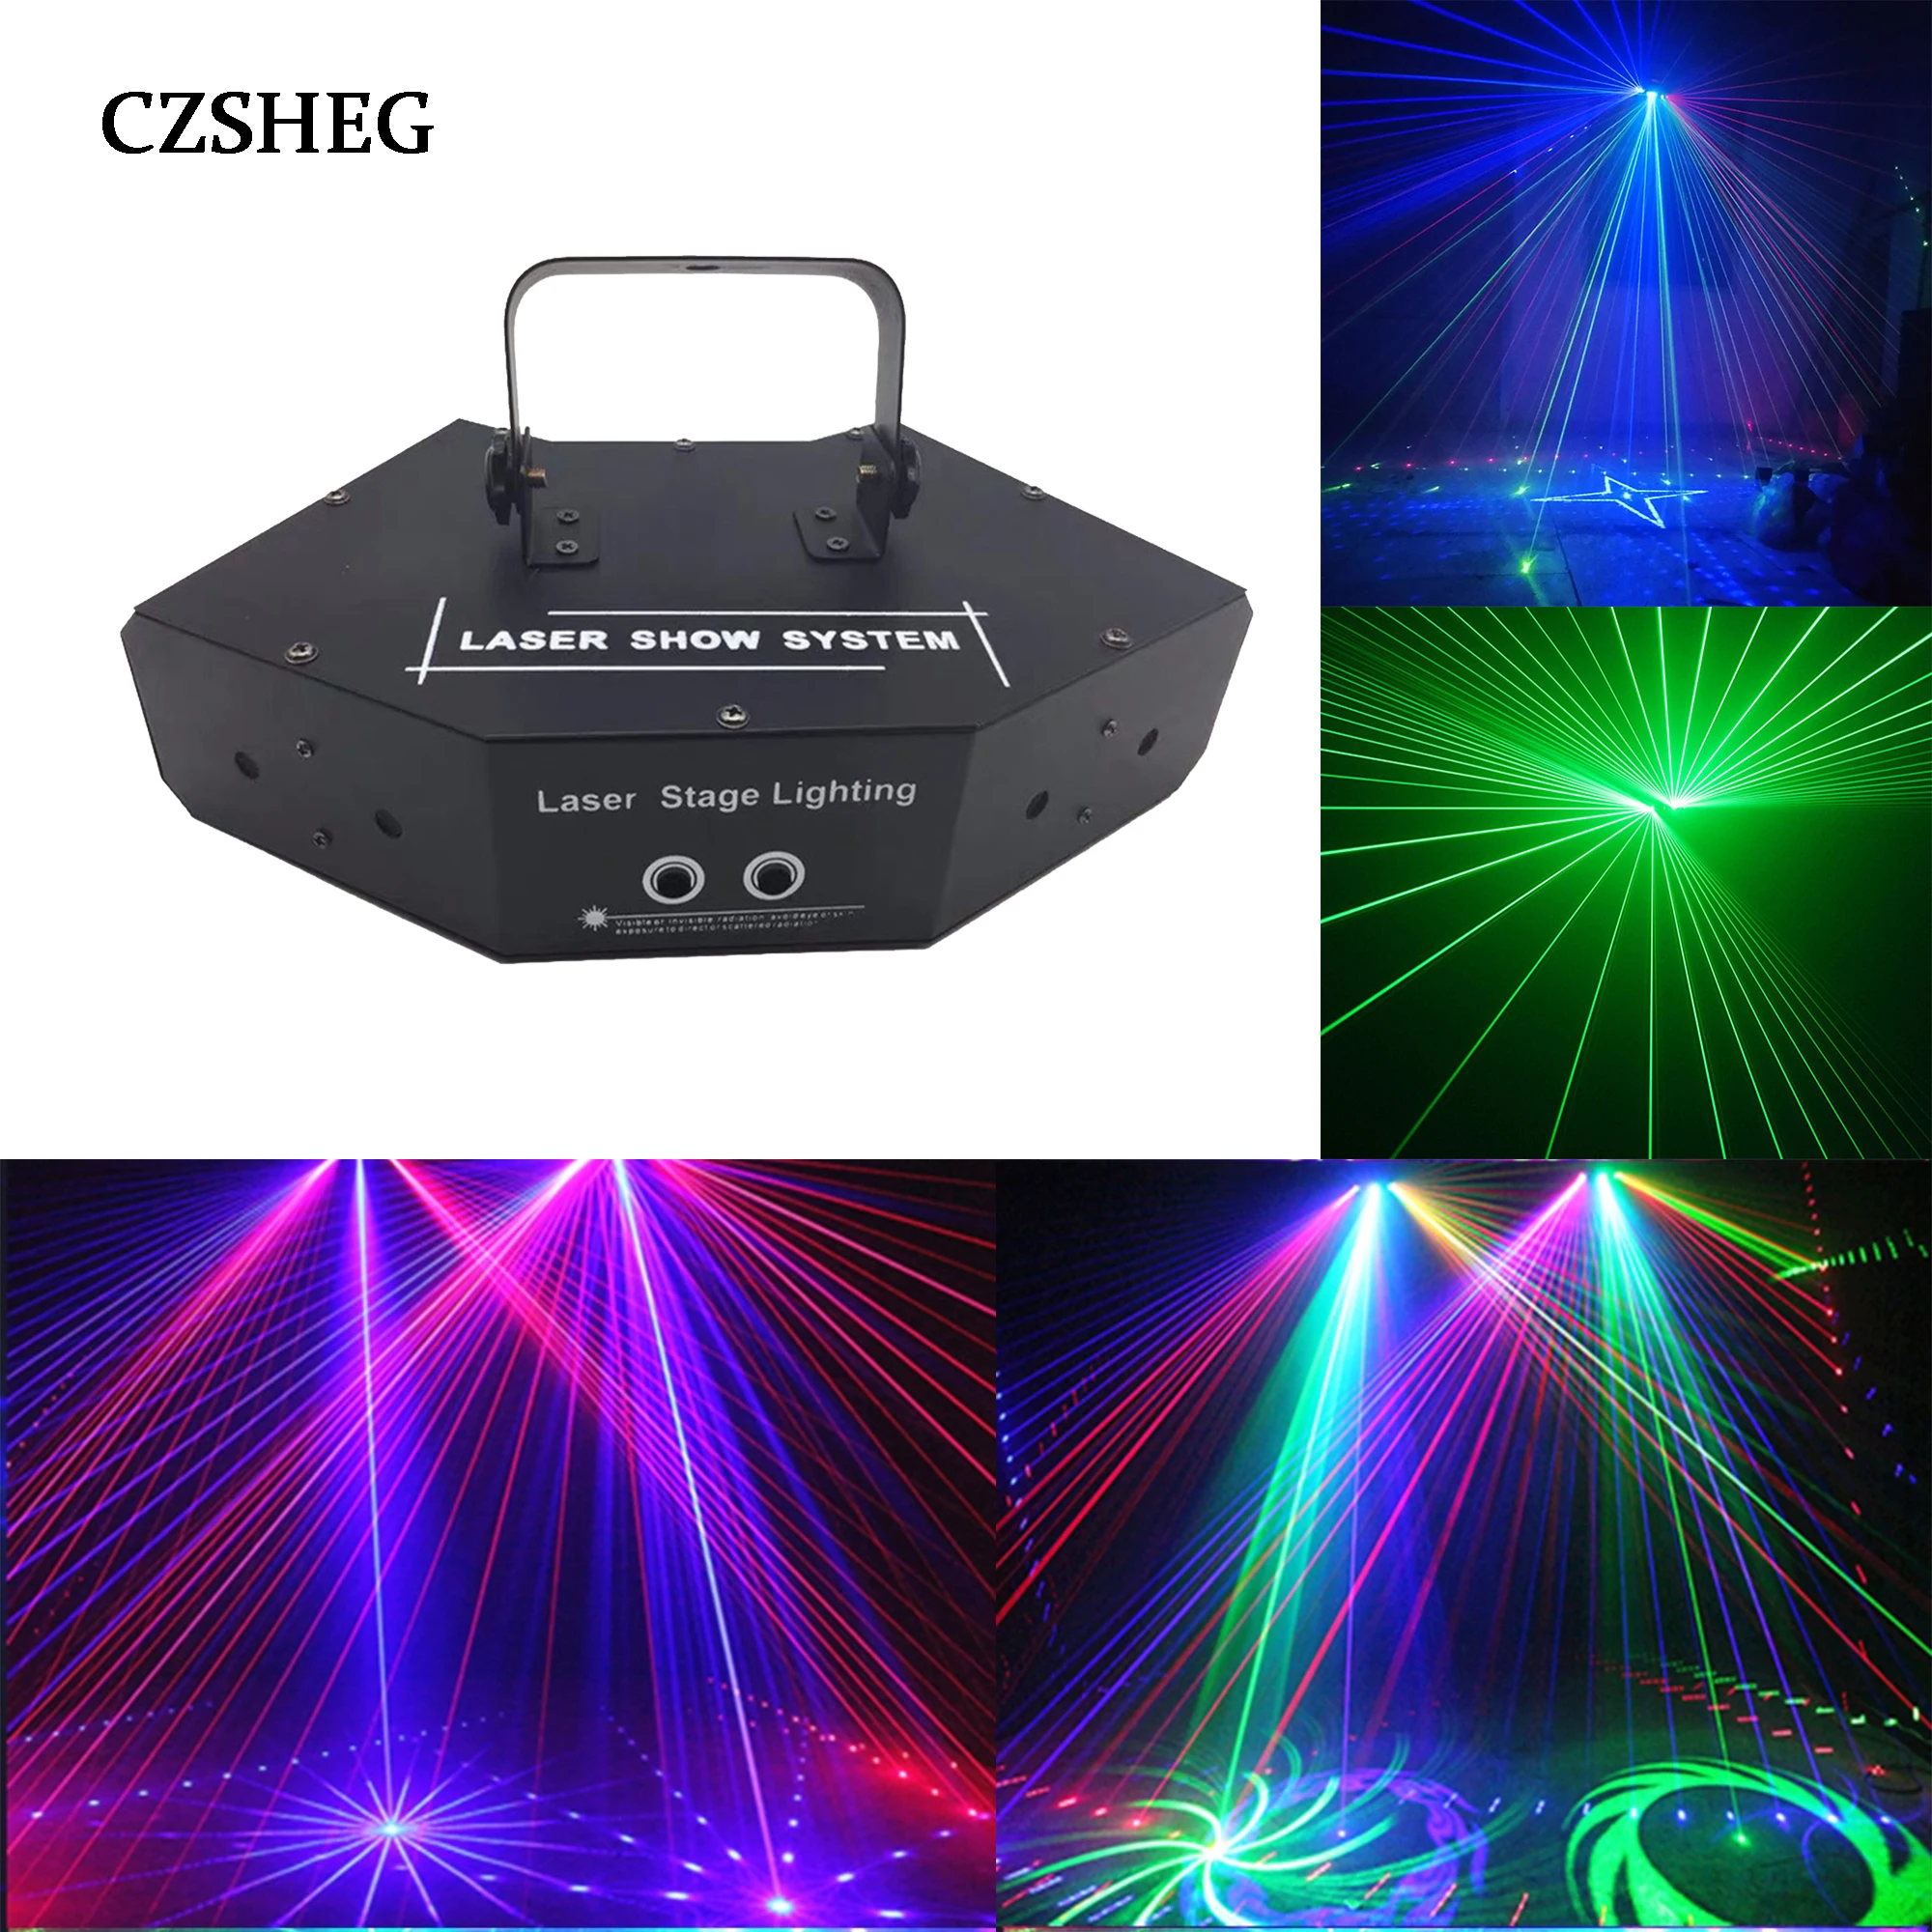 Fan-förmigen laser scanner wirkung beleuchtung mit DMX sound control für Weihnachten DJ club bühne aktivitäten leistungen und parteien